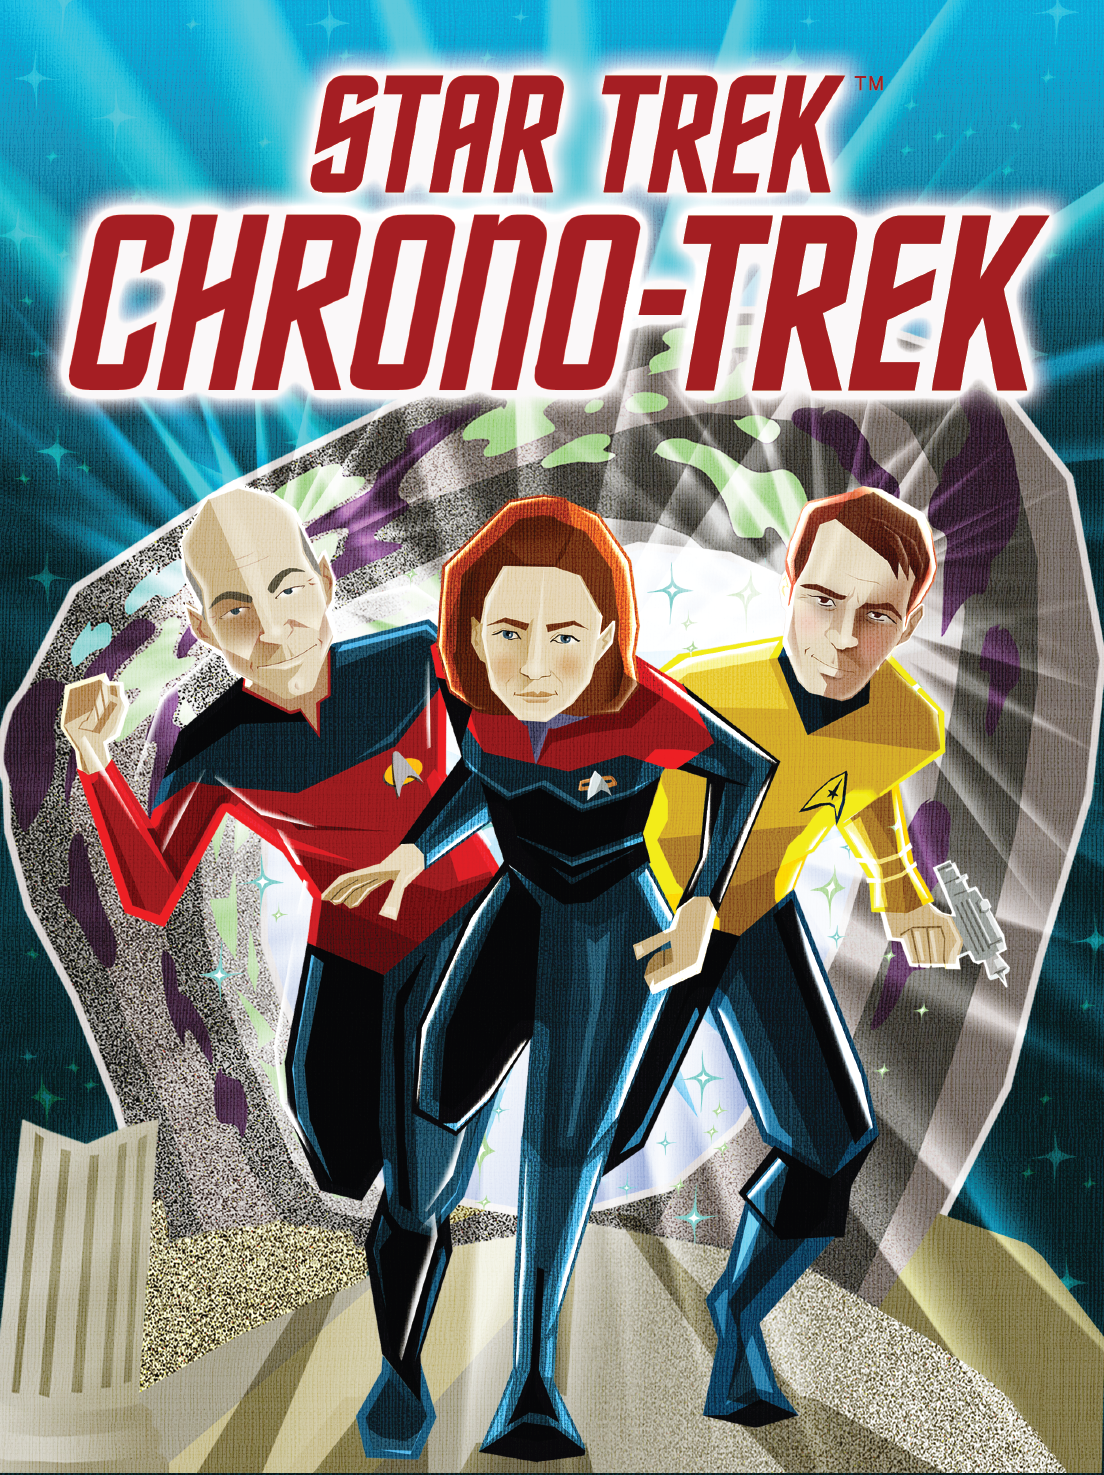 Star Trek Chrono-Trek Game Picture